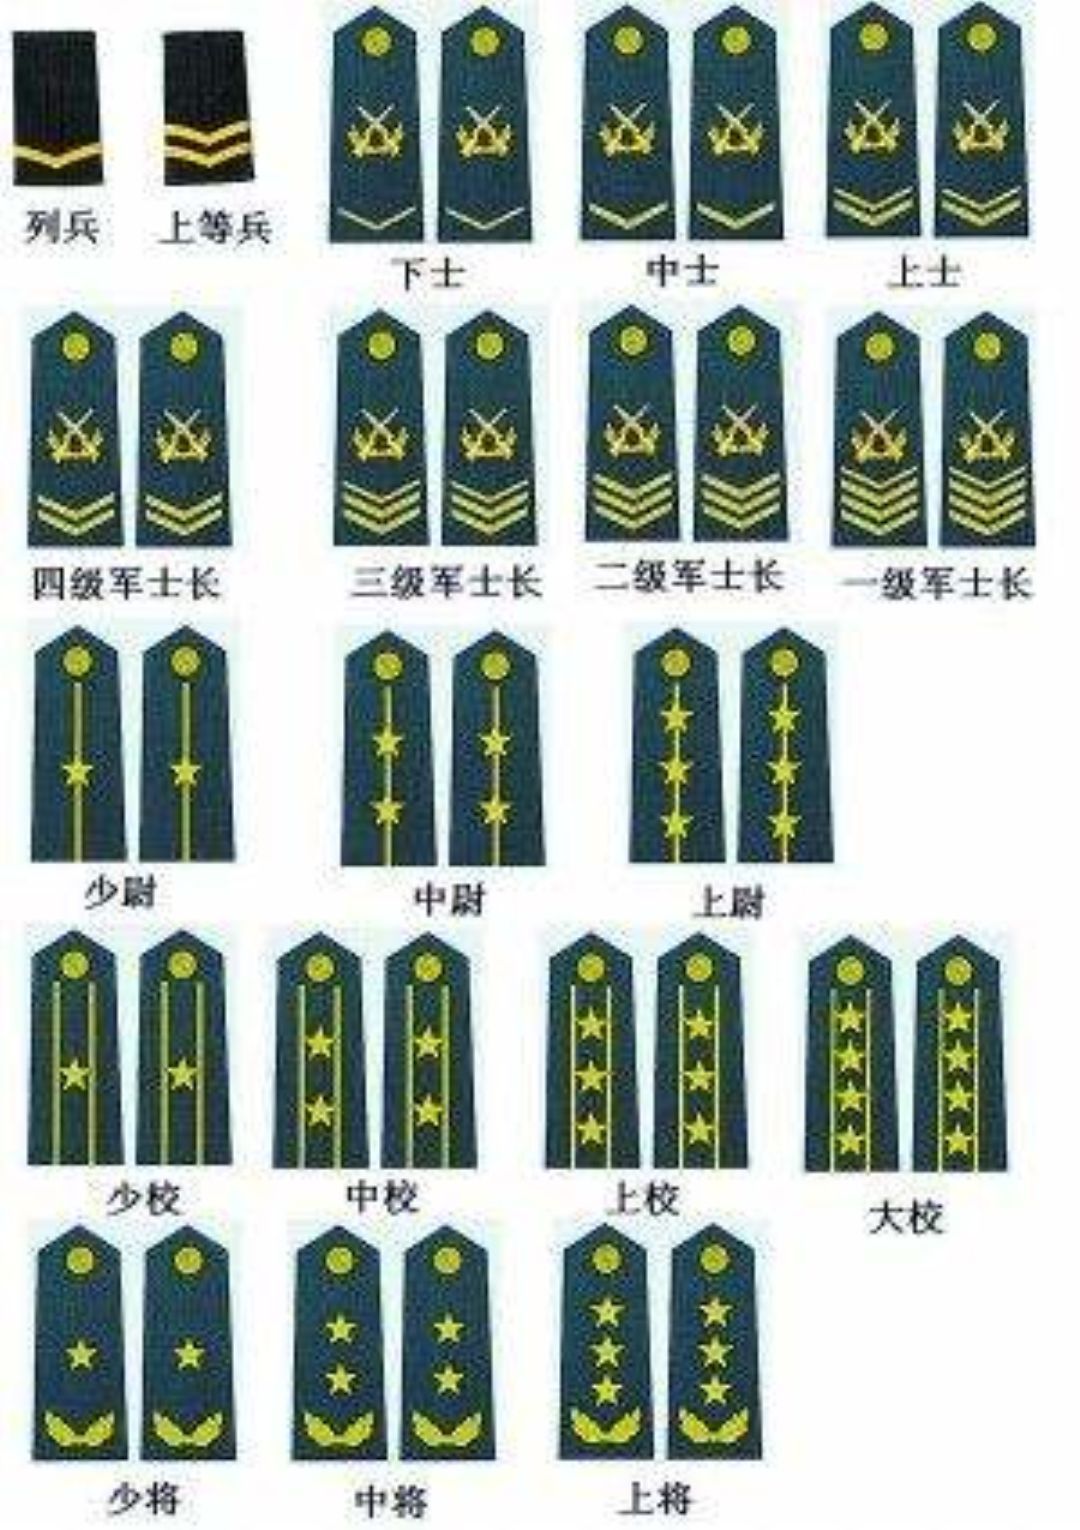 中国的军衔资历牌标志图片